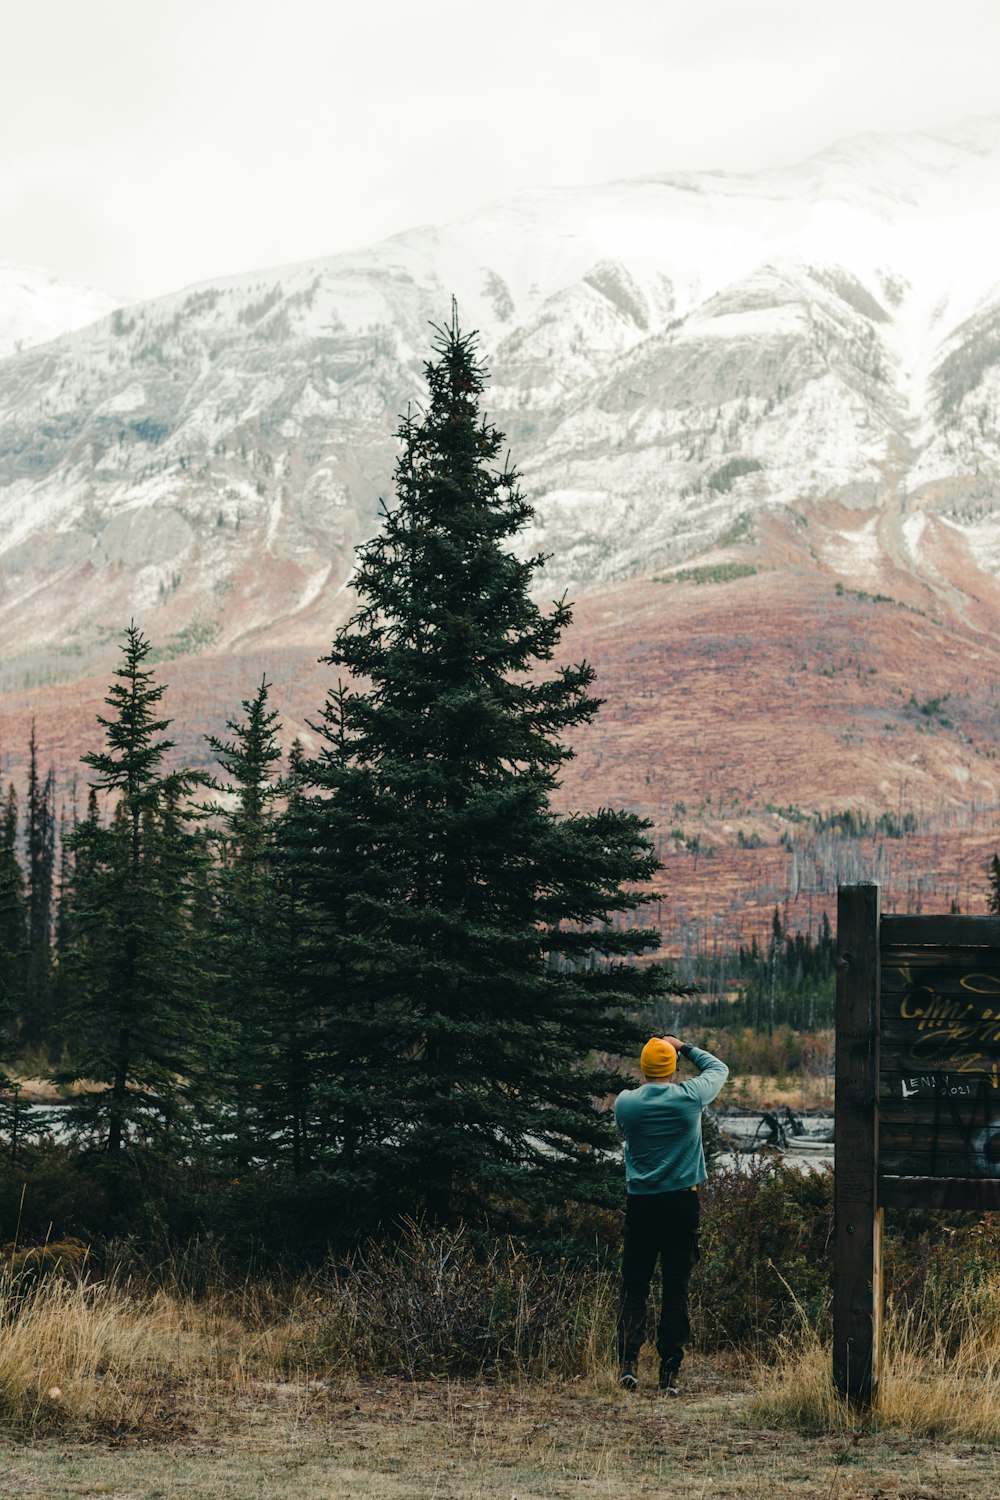 Una persona in piedi su una collina con alberi e montagne sullo sfondo